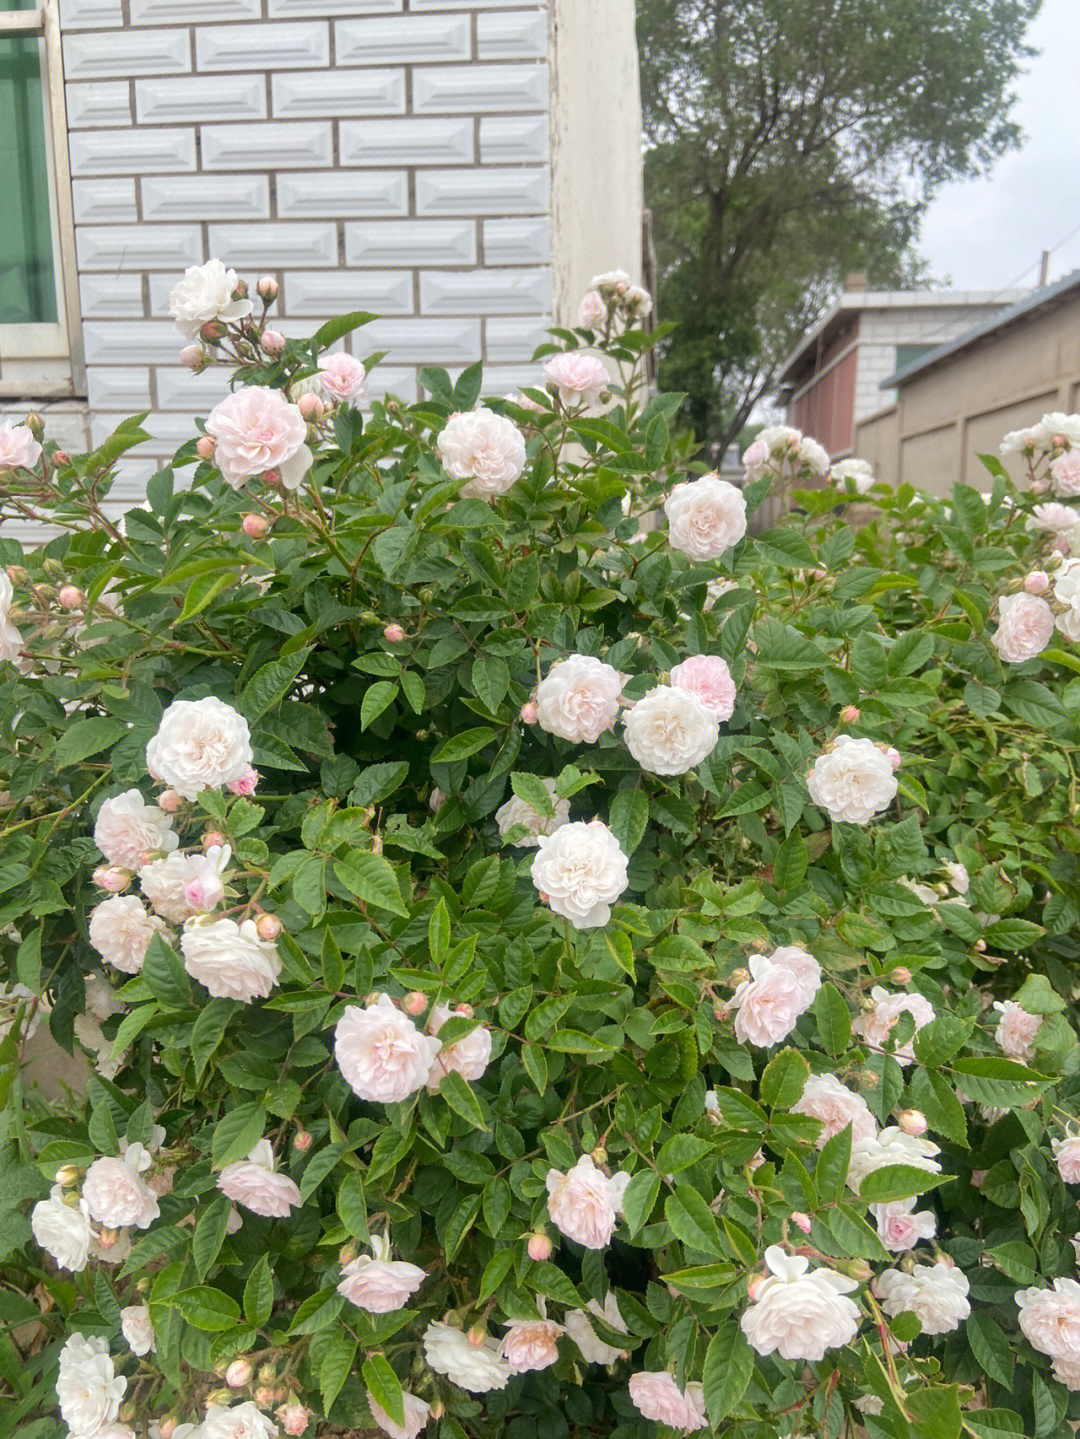 说明年要种一院子的蔷薇花的老公能信吗